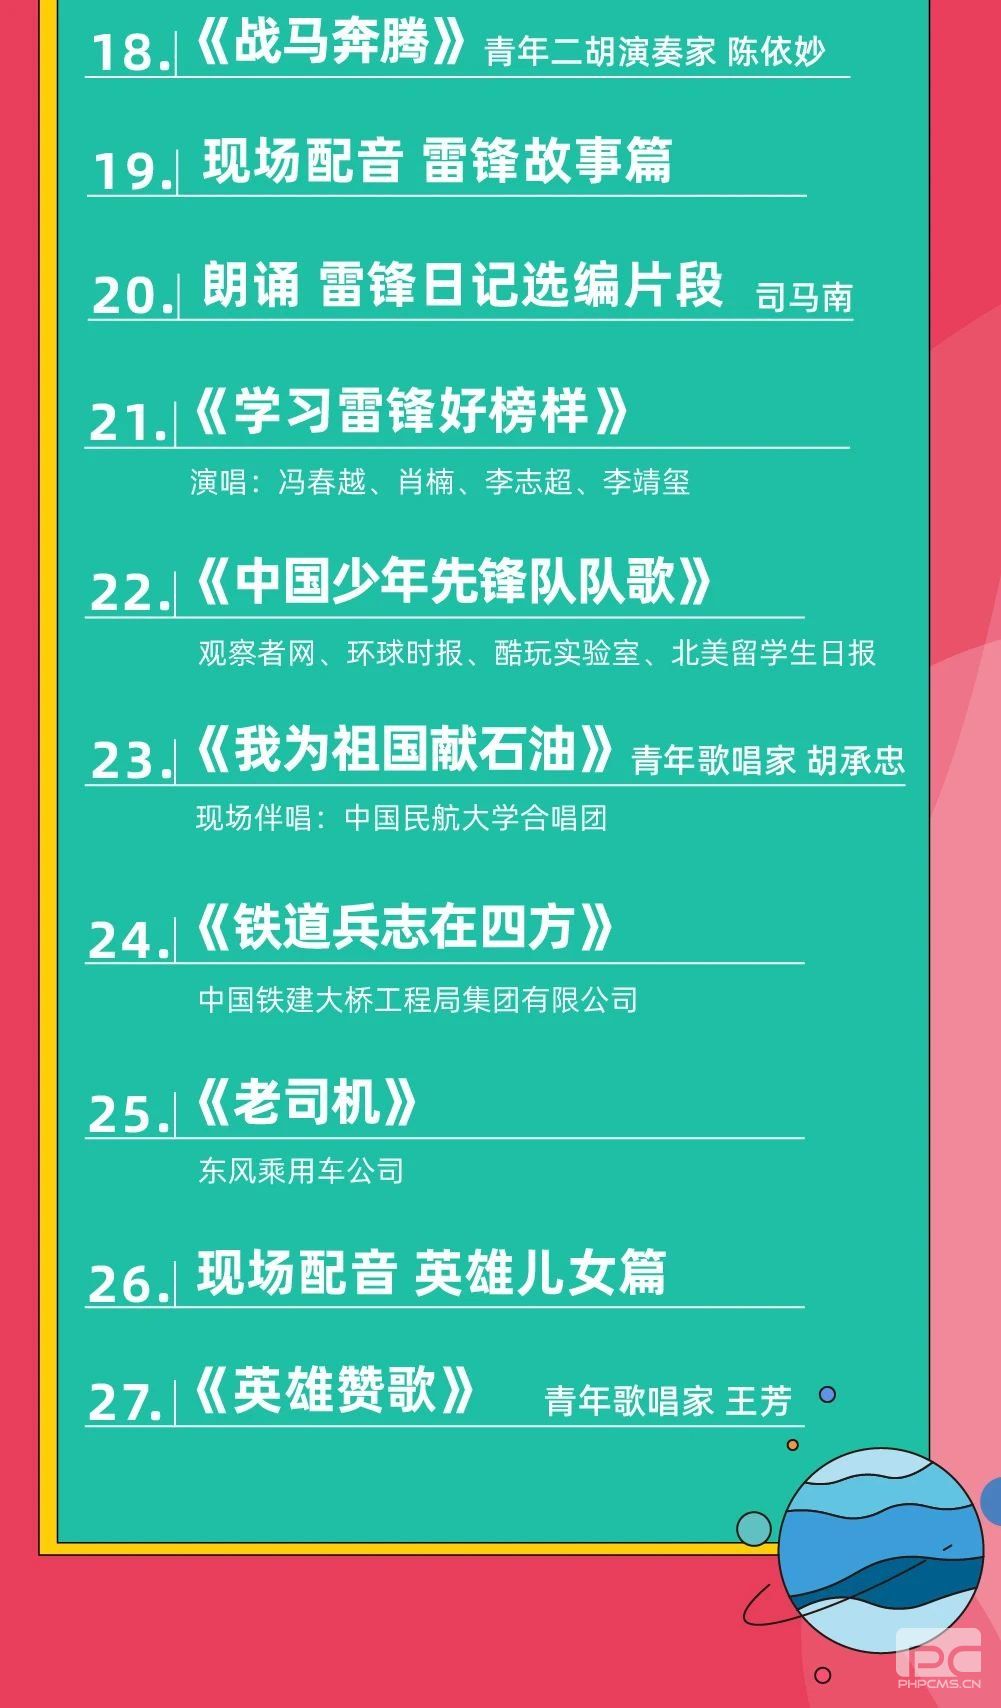 中国青年网络音乐节直播链接 节目单 中国青年网络音乐节2021